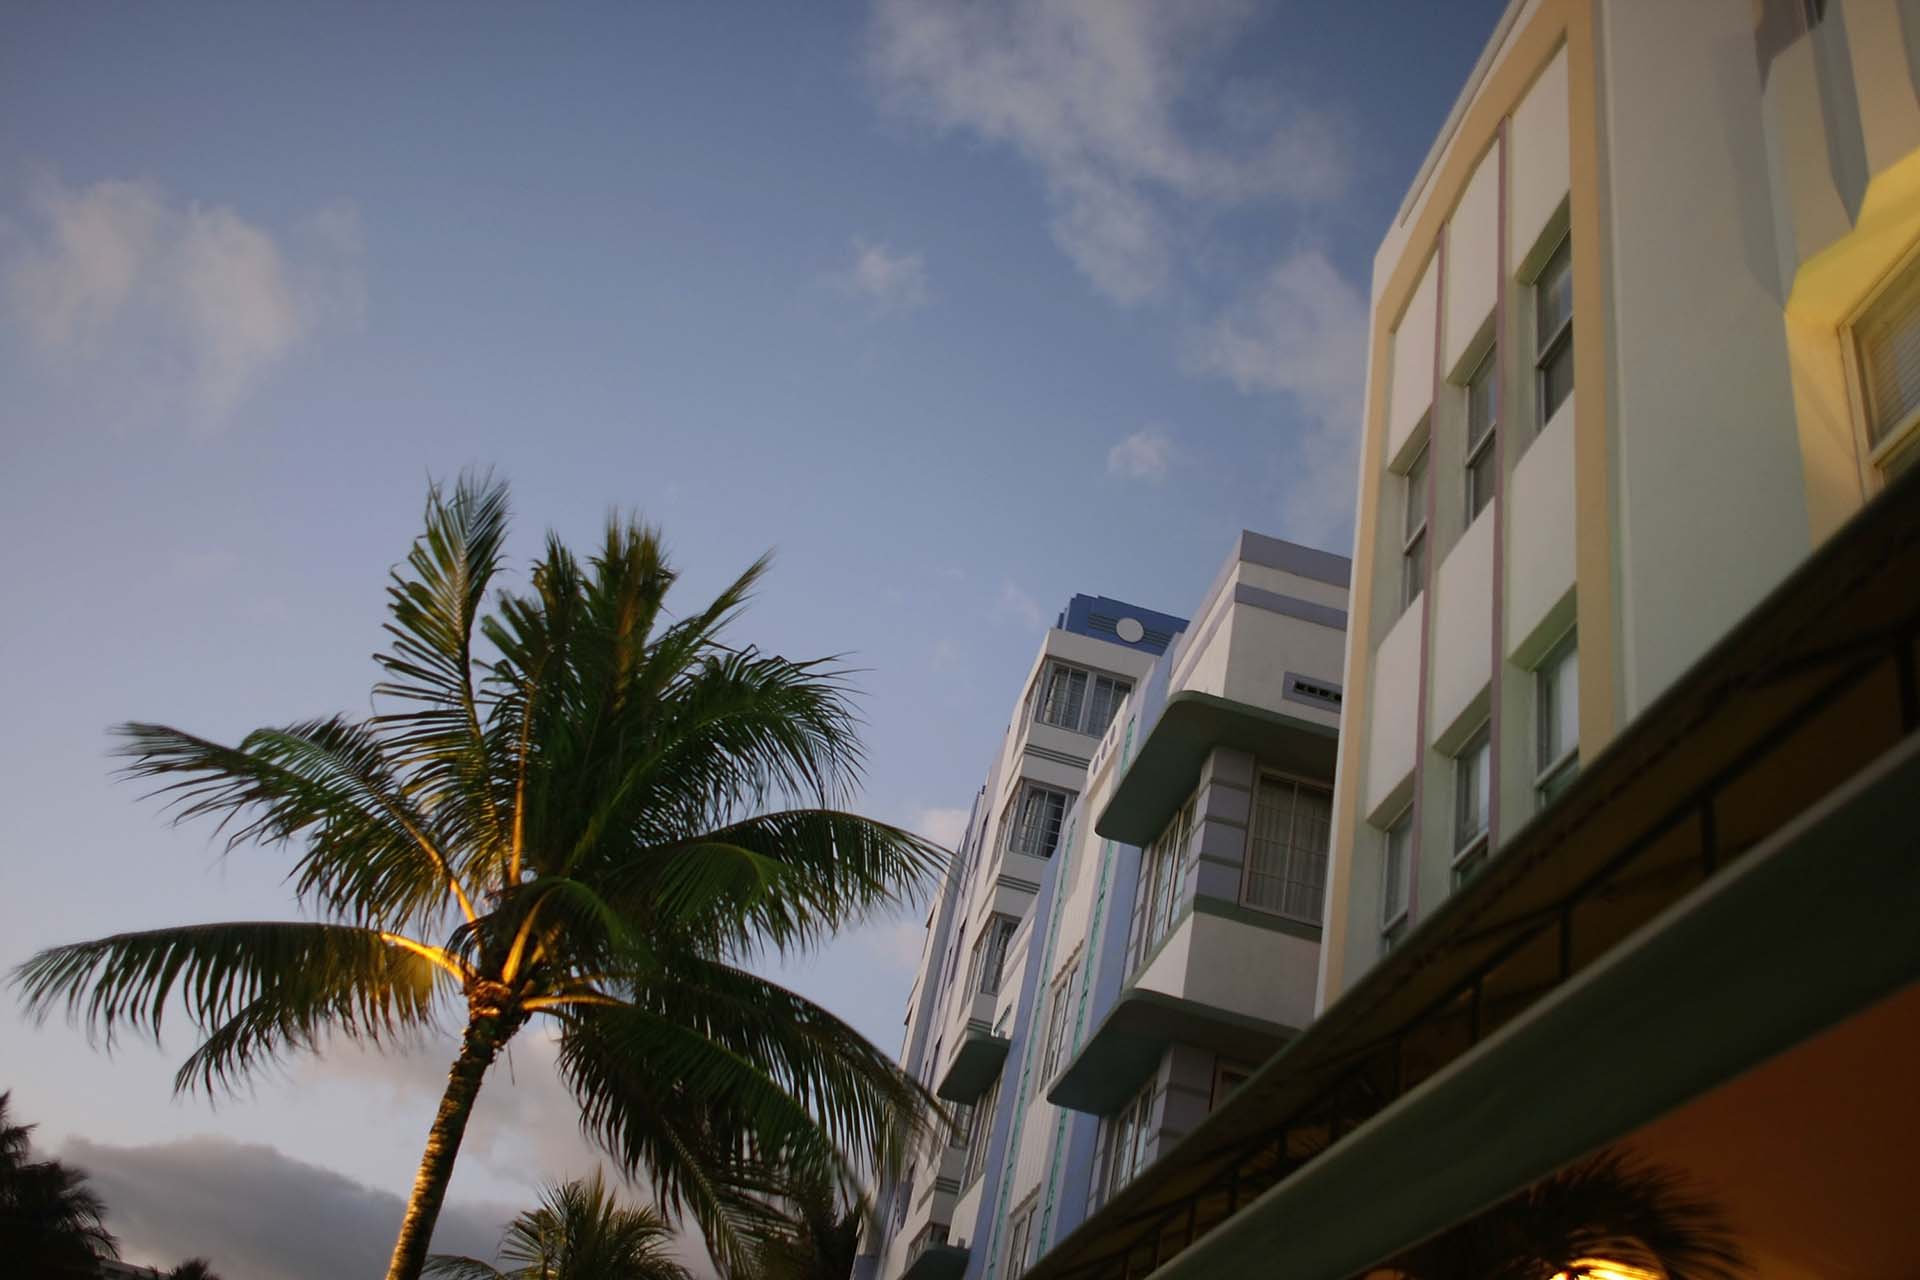 La nueva app ofrece recorridos por la arquitectura Art Deco, patrimonio histórico que se concentra en Miami Beach, y el abundante arte en espacios públicos. (Joe Raedle/Getty Images)